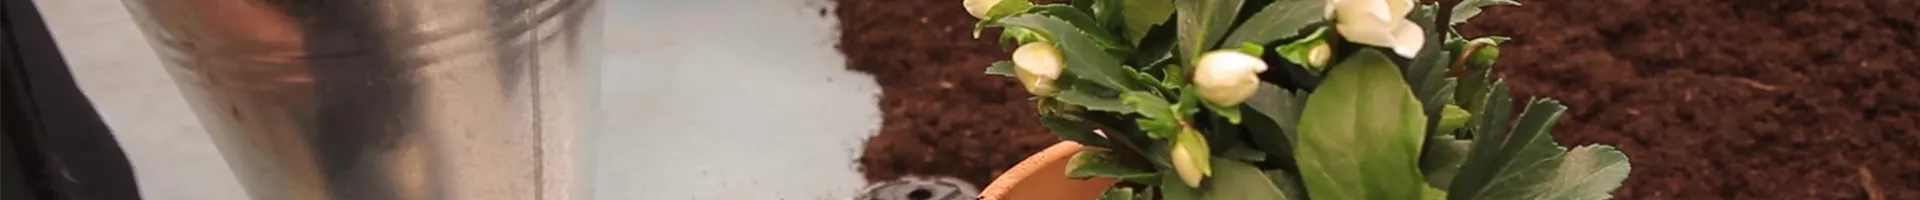 Christrose - Einpflanzen in ein Gefäß (thumbnail).jpg